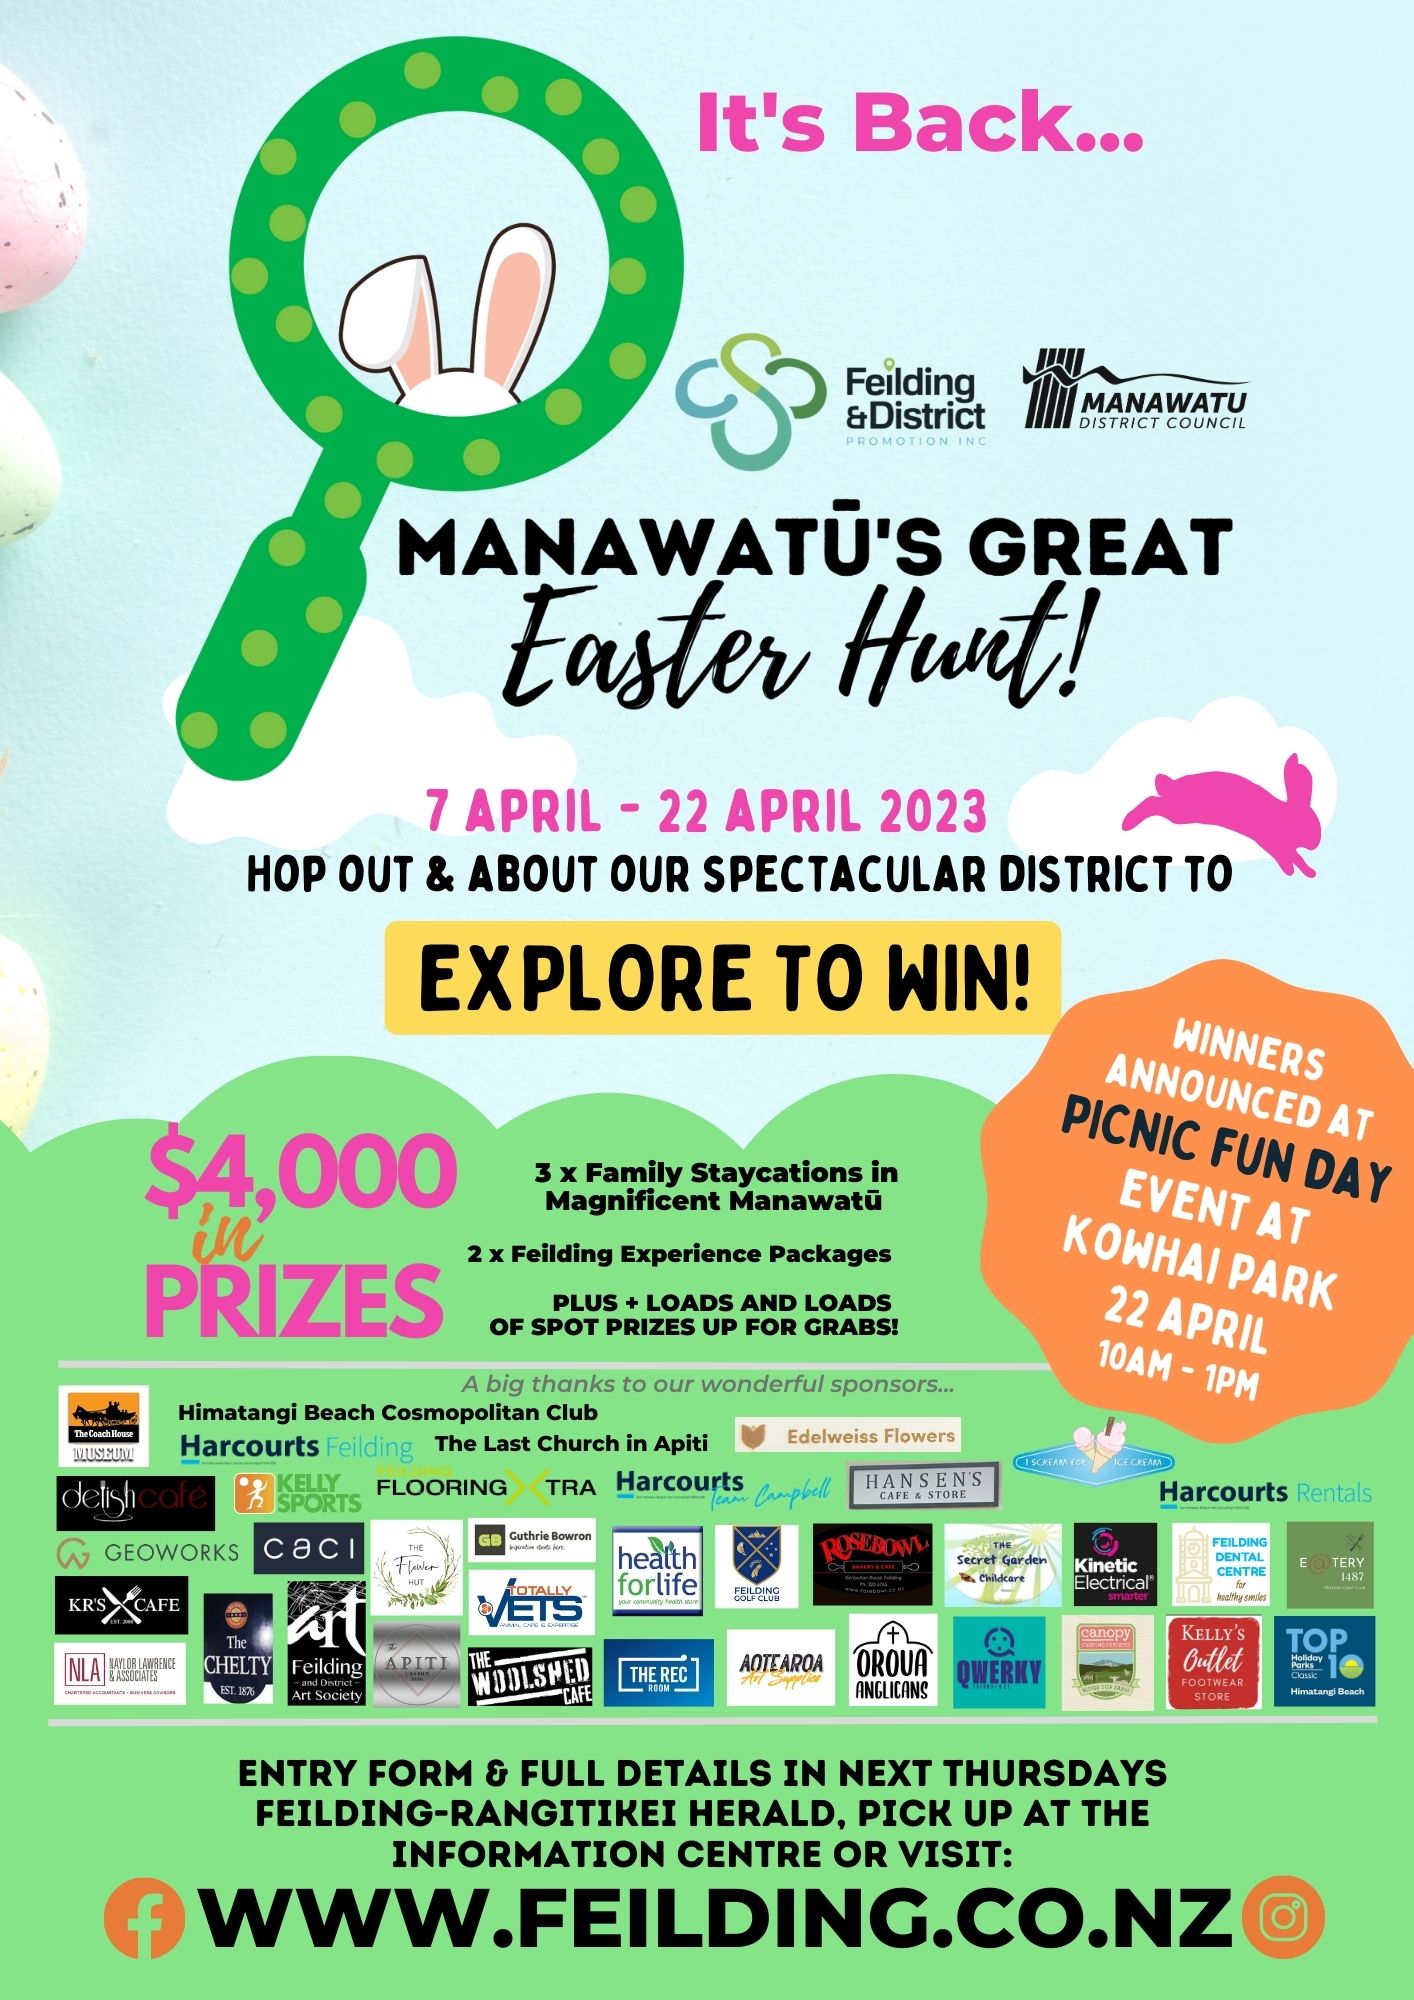 Manawatus Great Easter Hunt